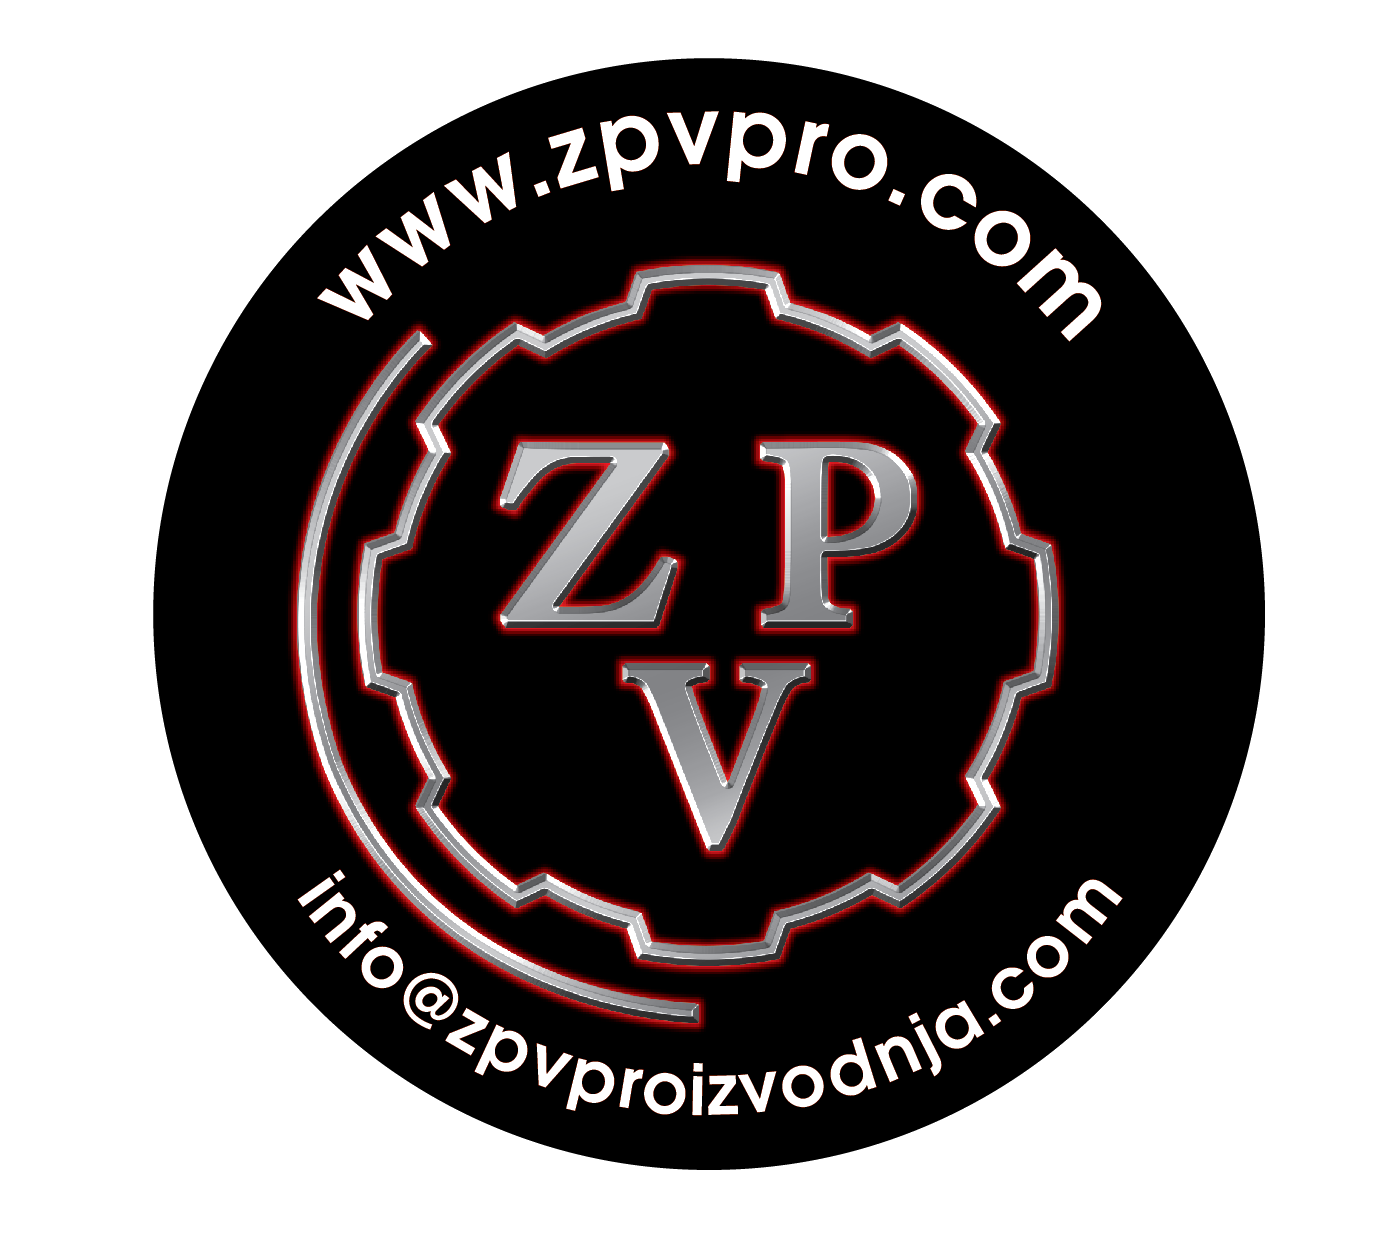 www.zpvpro.com